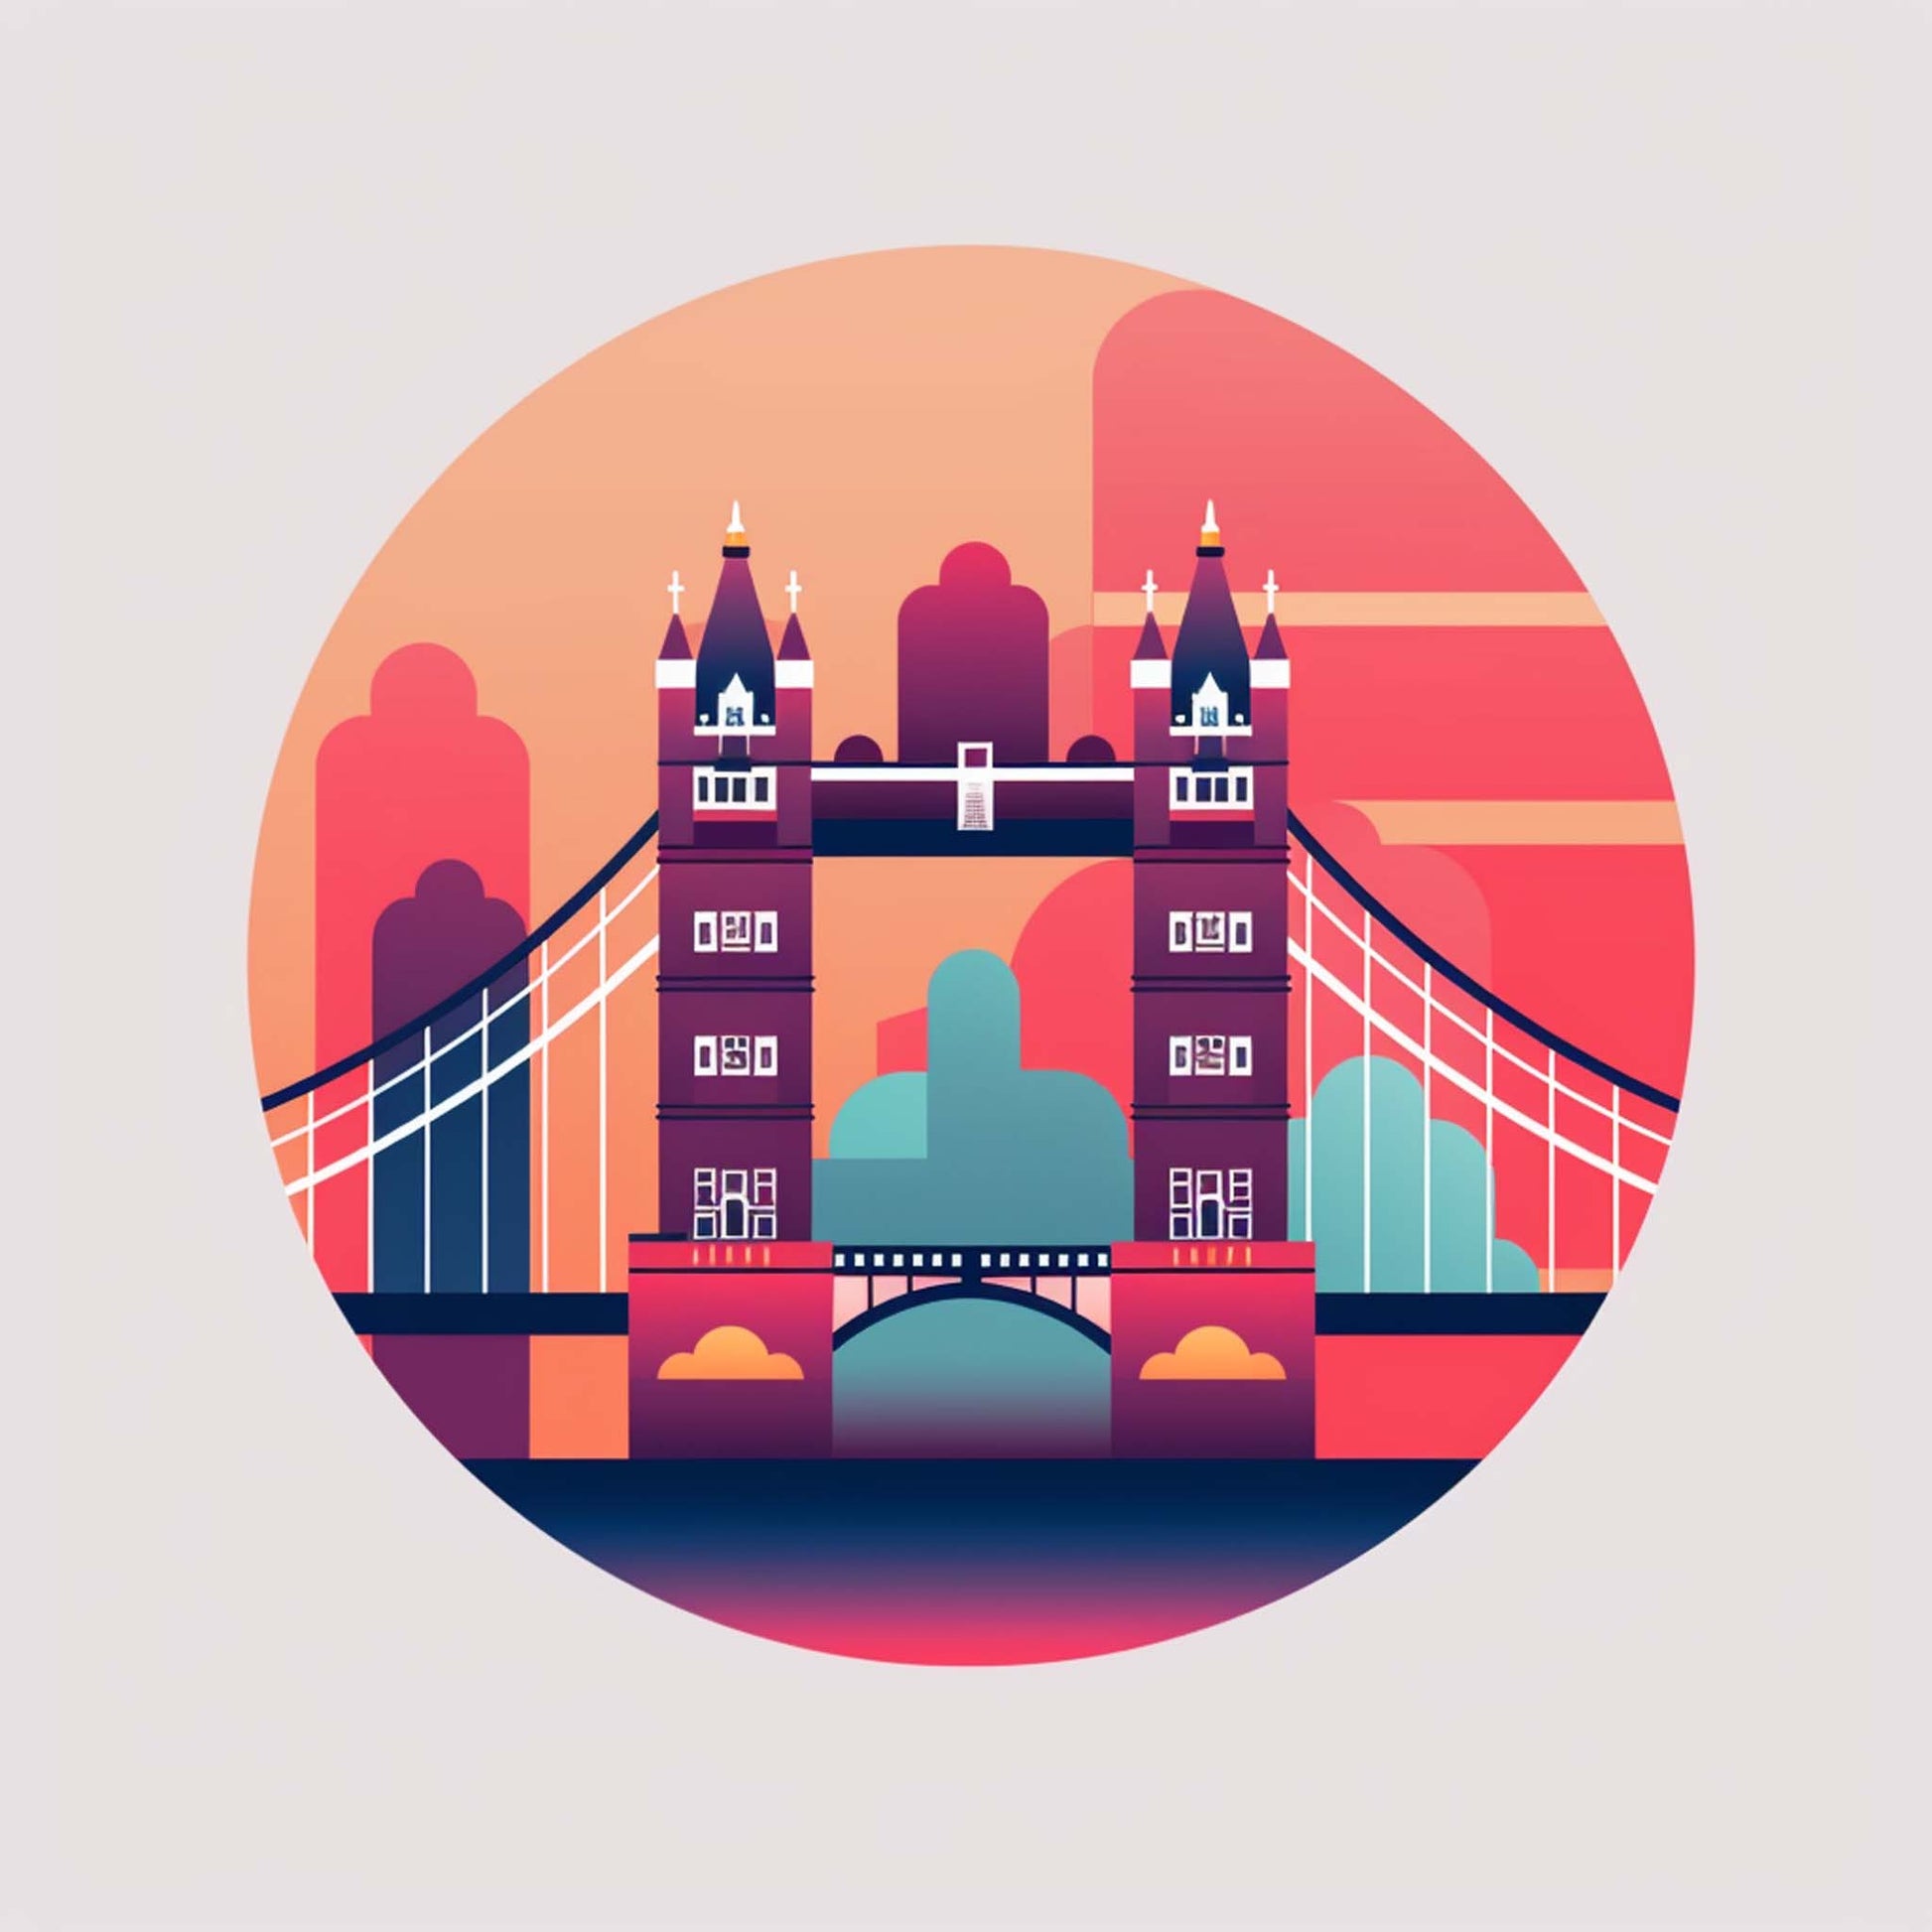 Urbanisto - London Tower Bridge - Wandbild in der Stilrichtung des Minimalismus